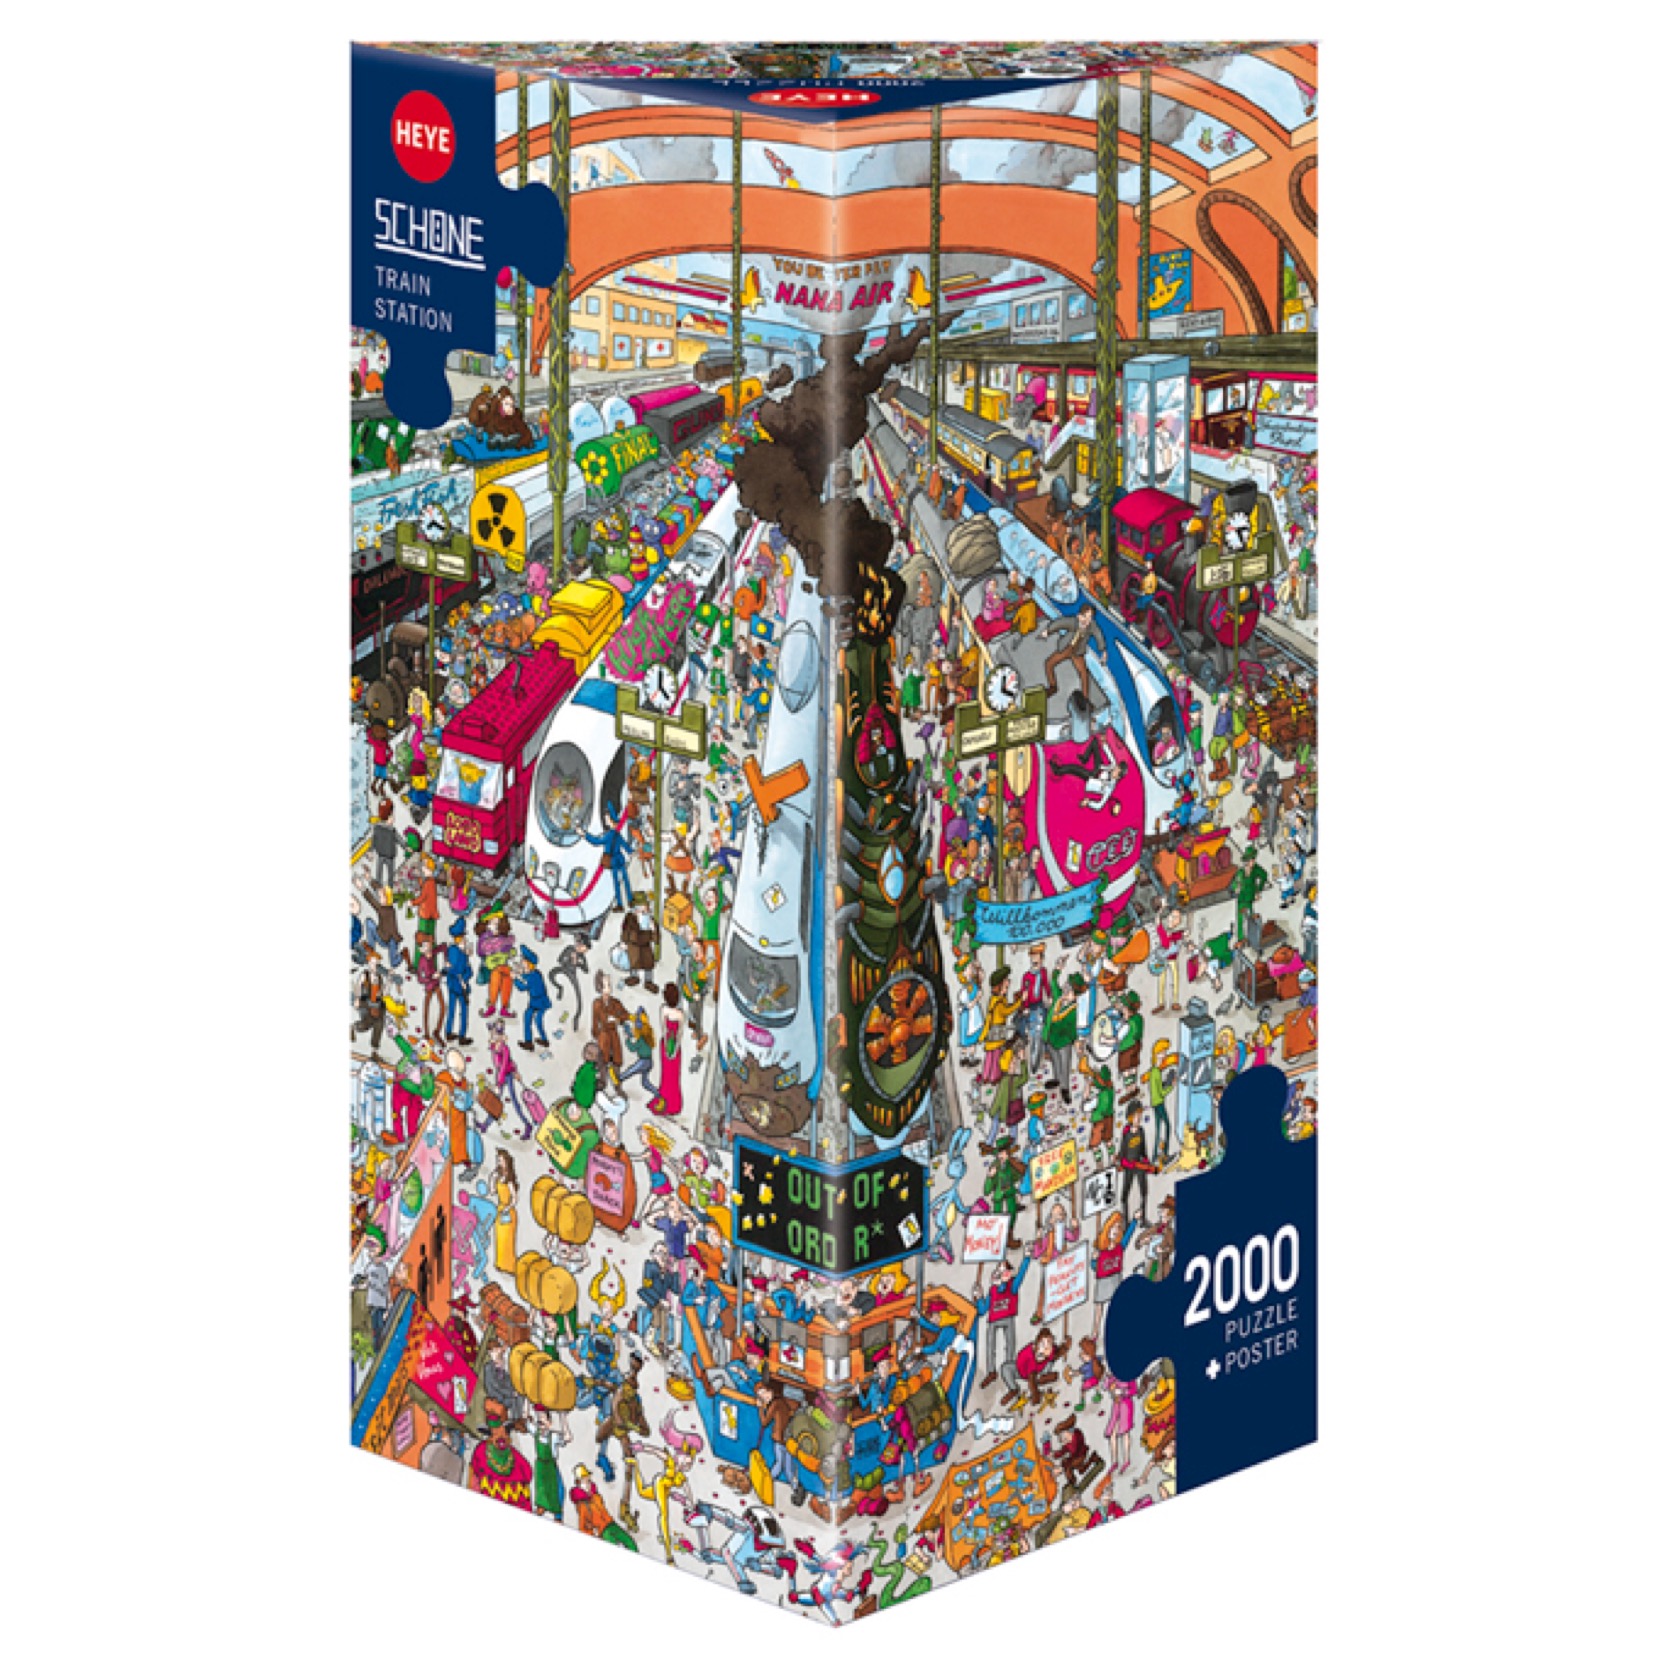 Puzzle 2000 Piezas | Train Station Heye